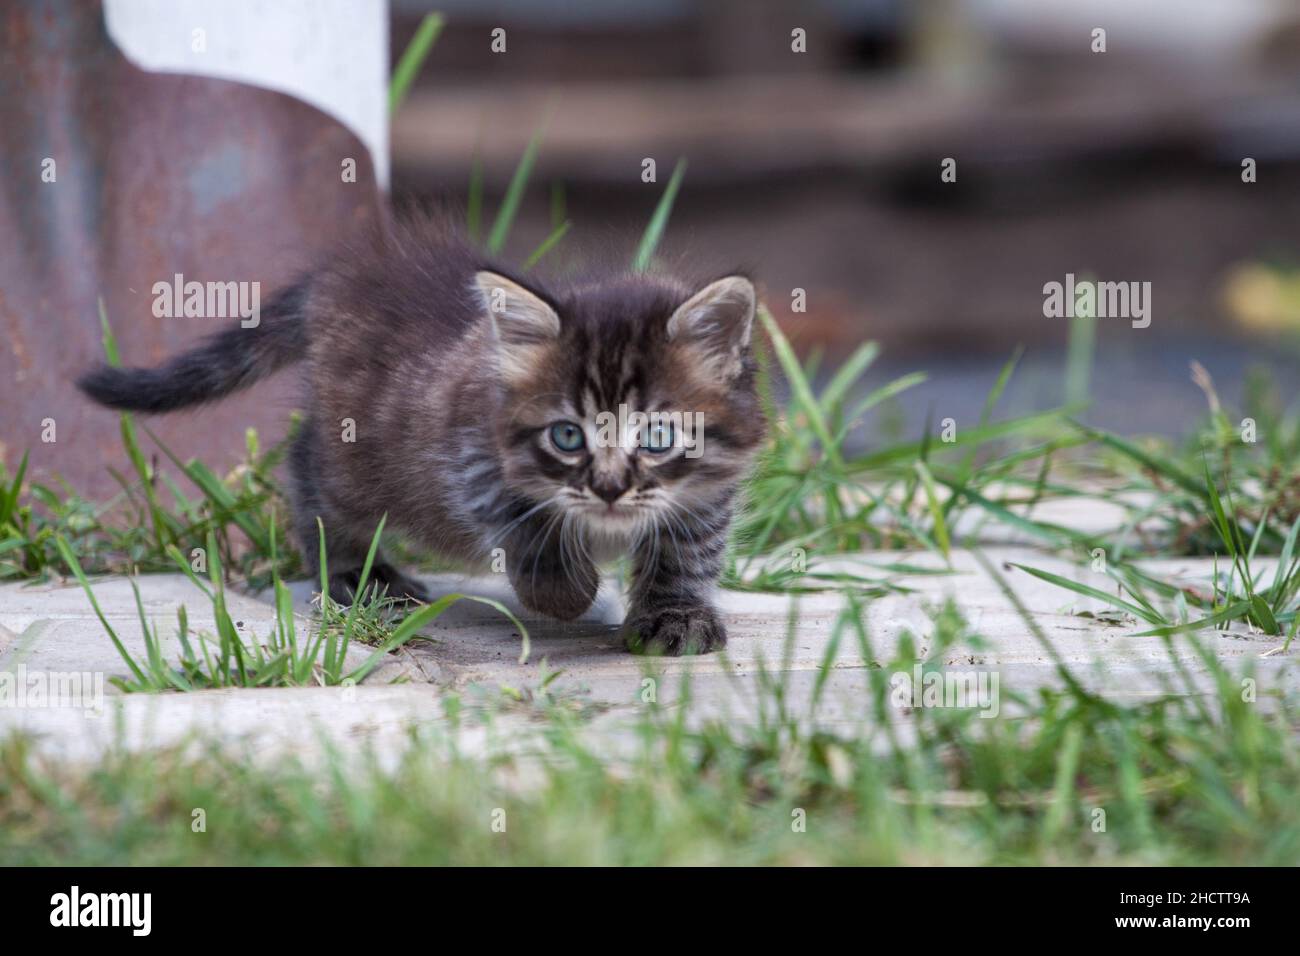 gatito asustado en la hierba verde. El gatito se escapó de casa y se perdió en el parque. Un gatito a rayas siberianas explora el mundo desconocido en la calle. Foto de stock